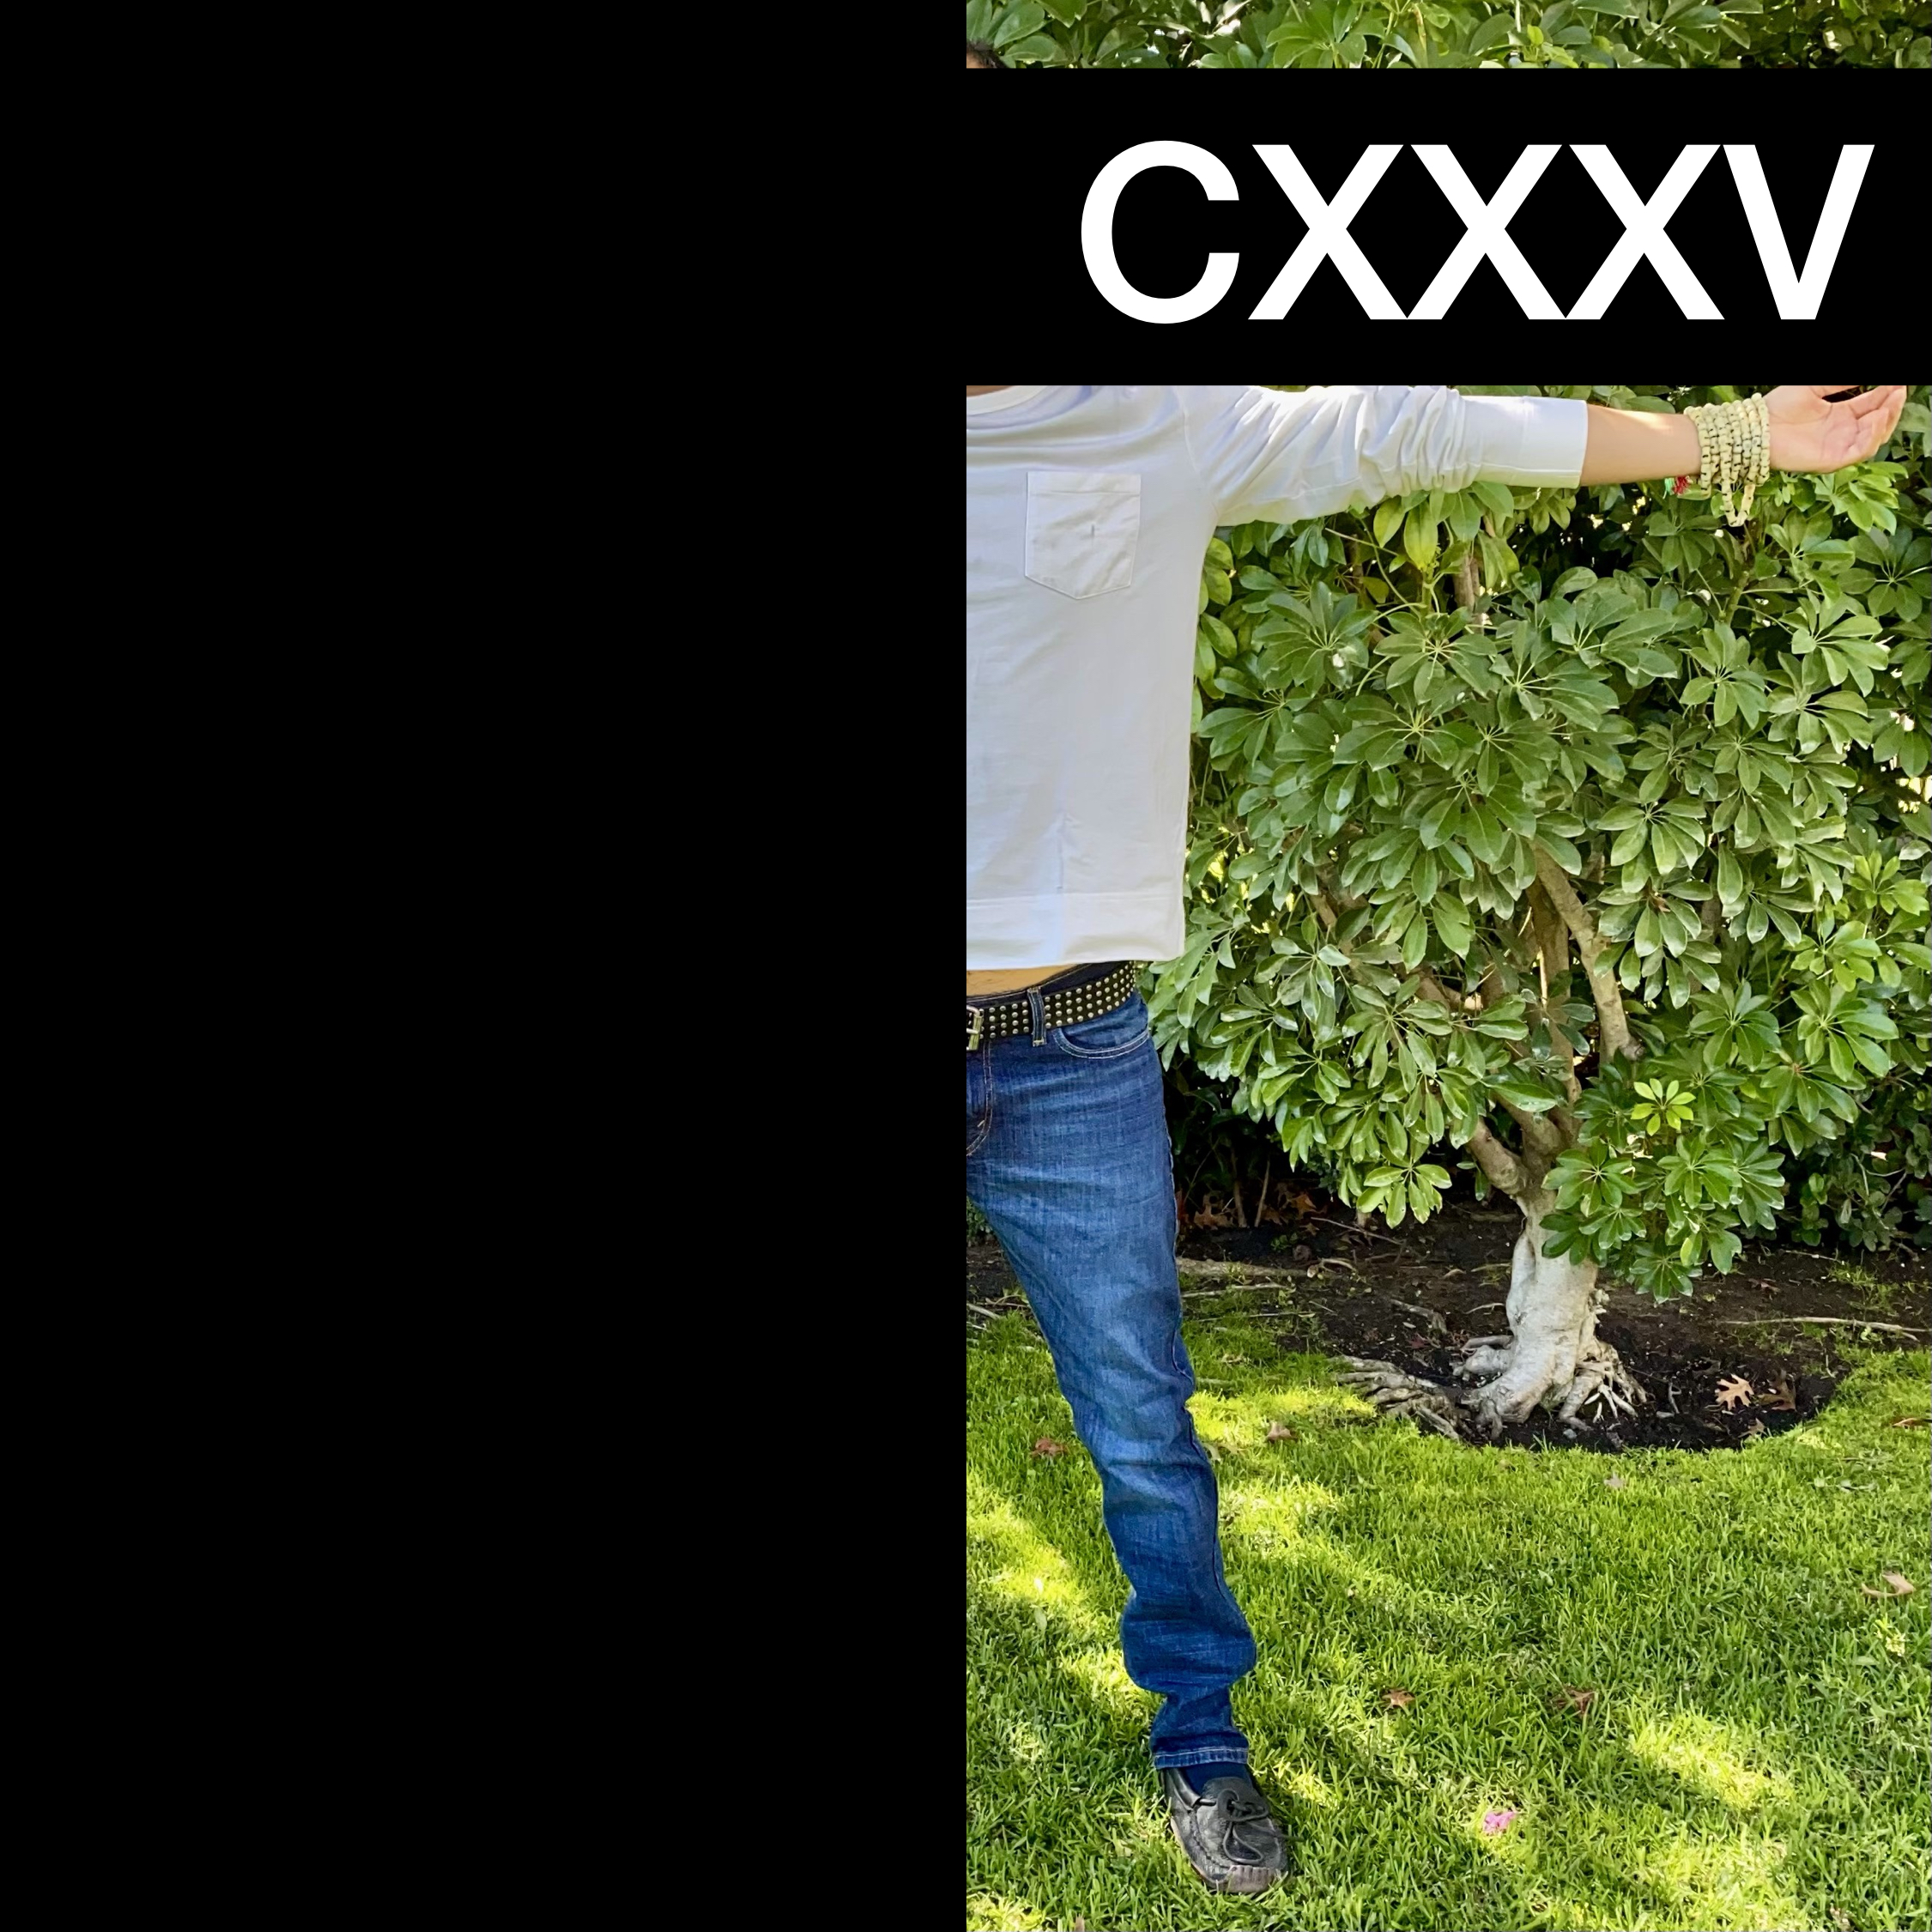 #CXXXV